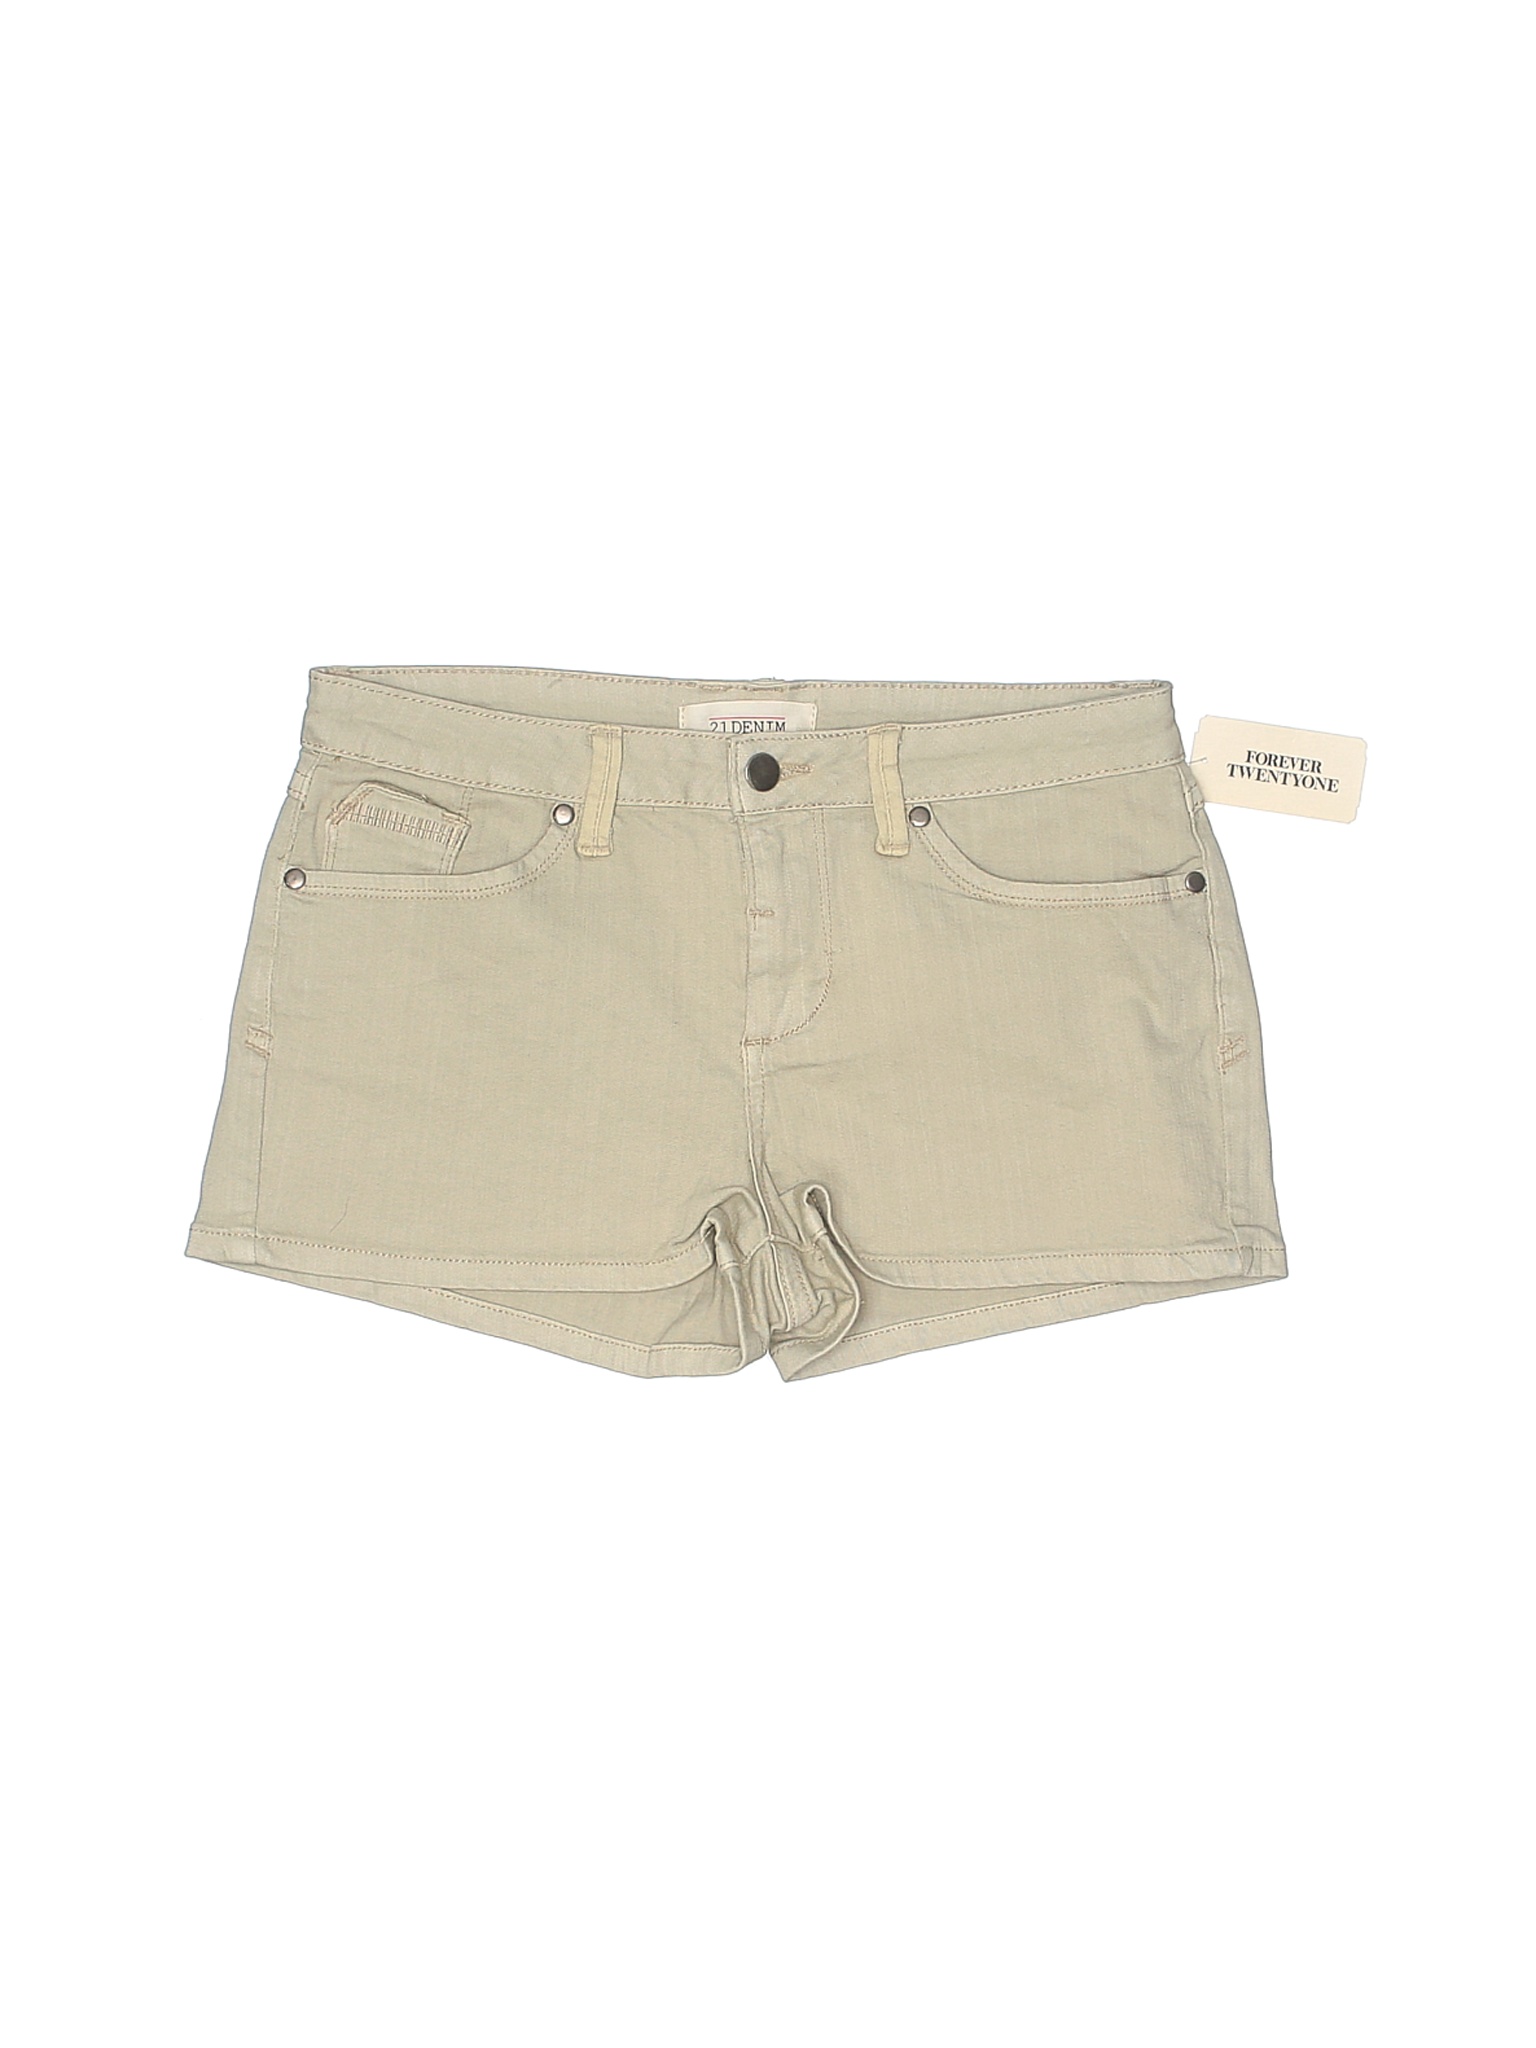 NWT 2.1 DENIM Women Brown Denim Shorts 29W | eBay